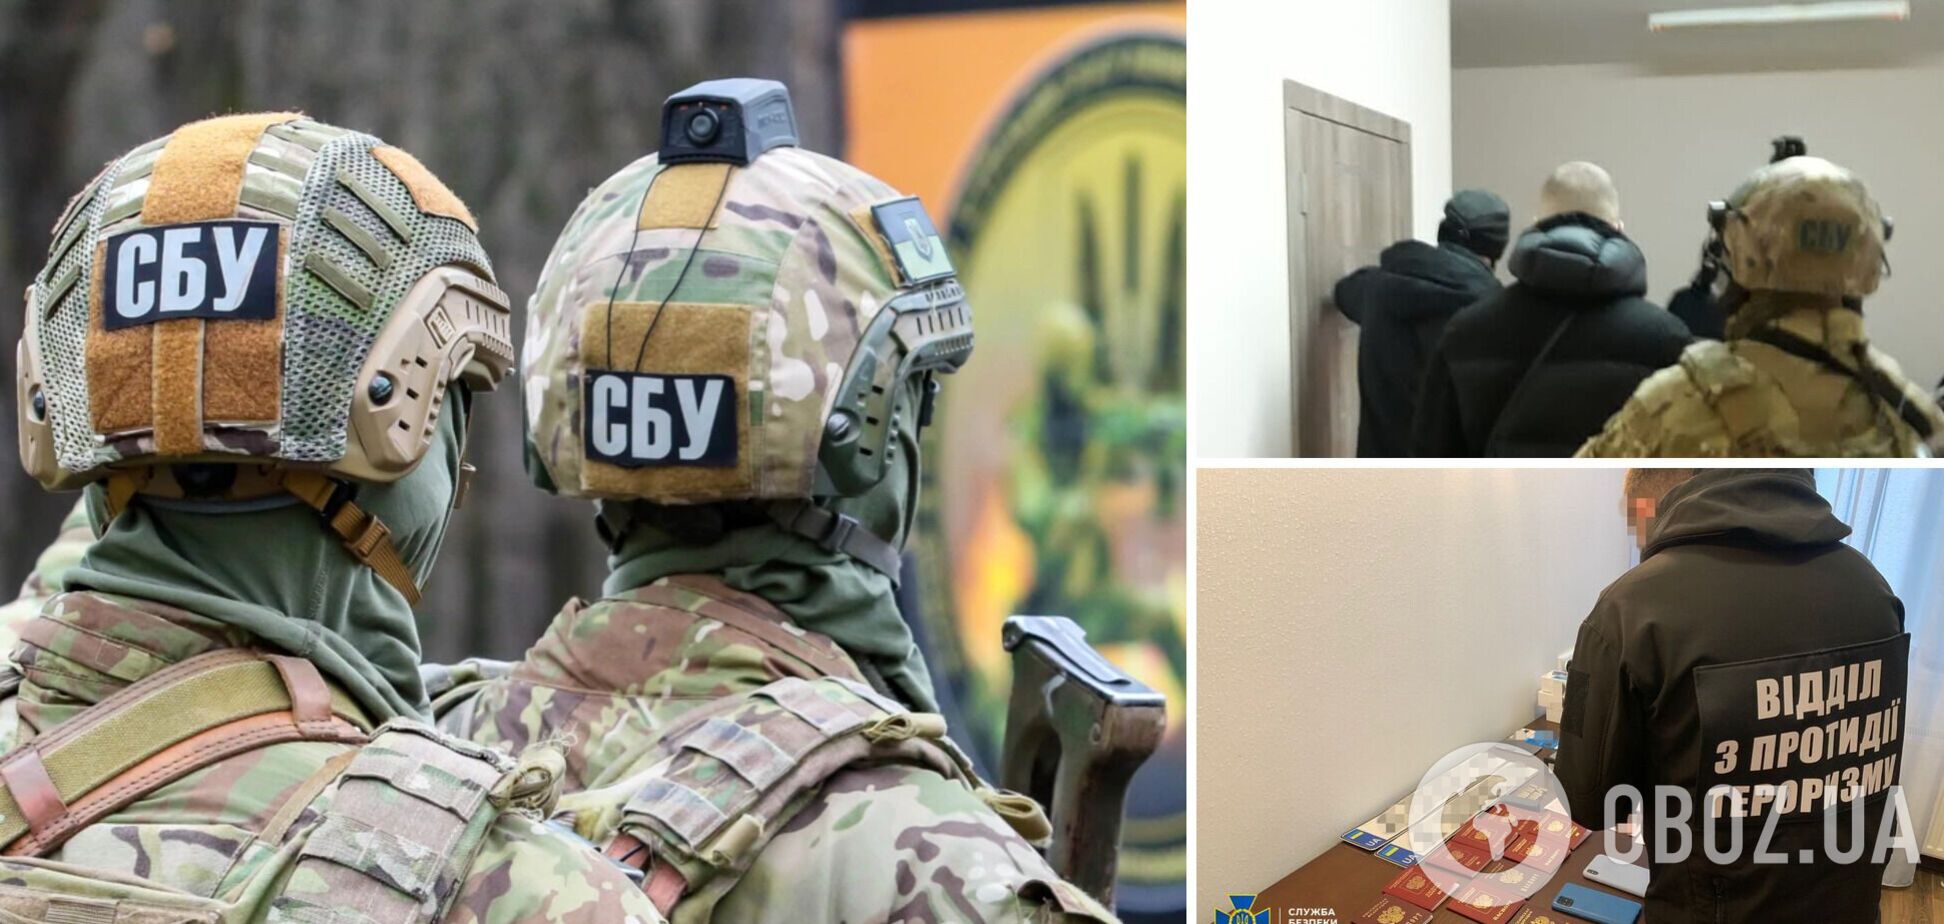 СБУ разоблачила группировку ИГИЛ в Киеве, среди ее участников было пять граждан России. Фото